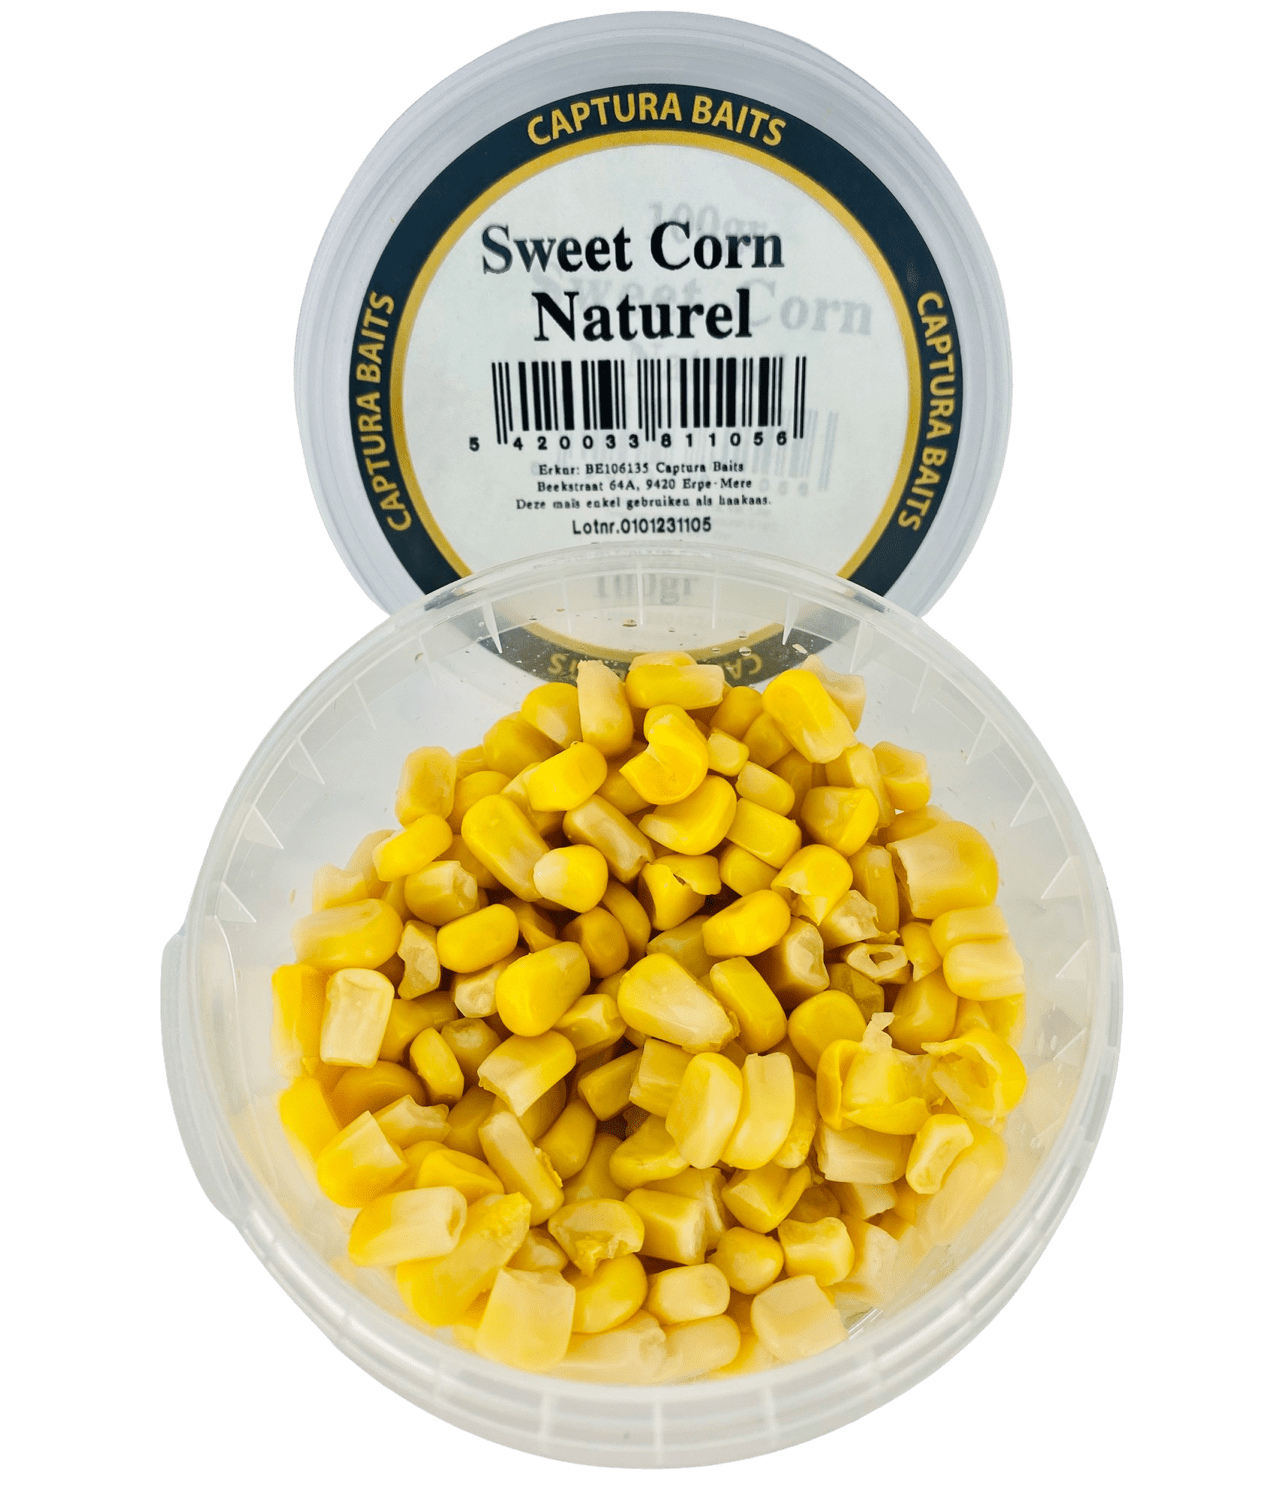 captura baits sweet corn mais naturel